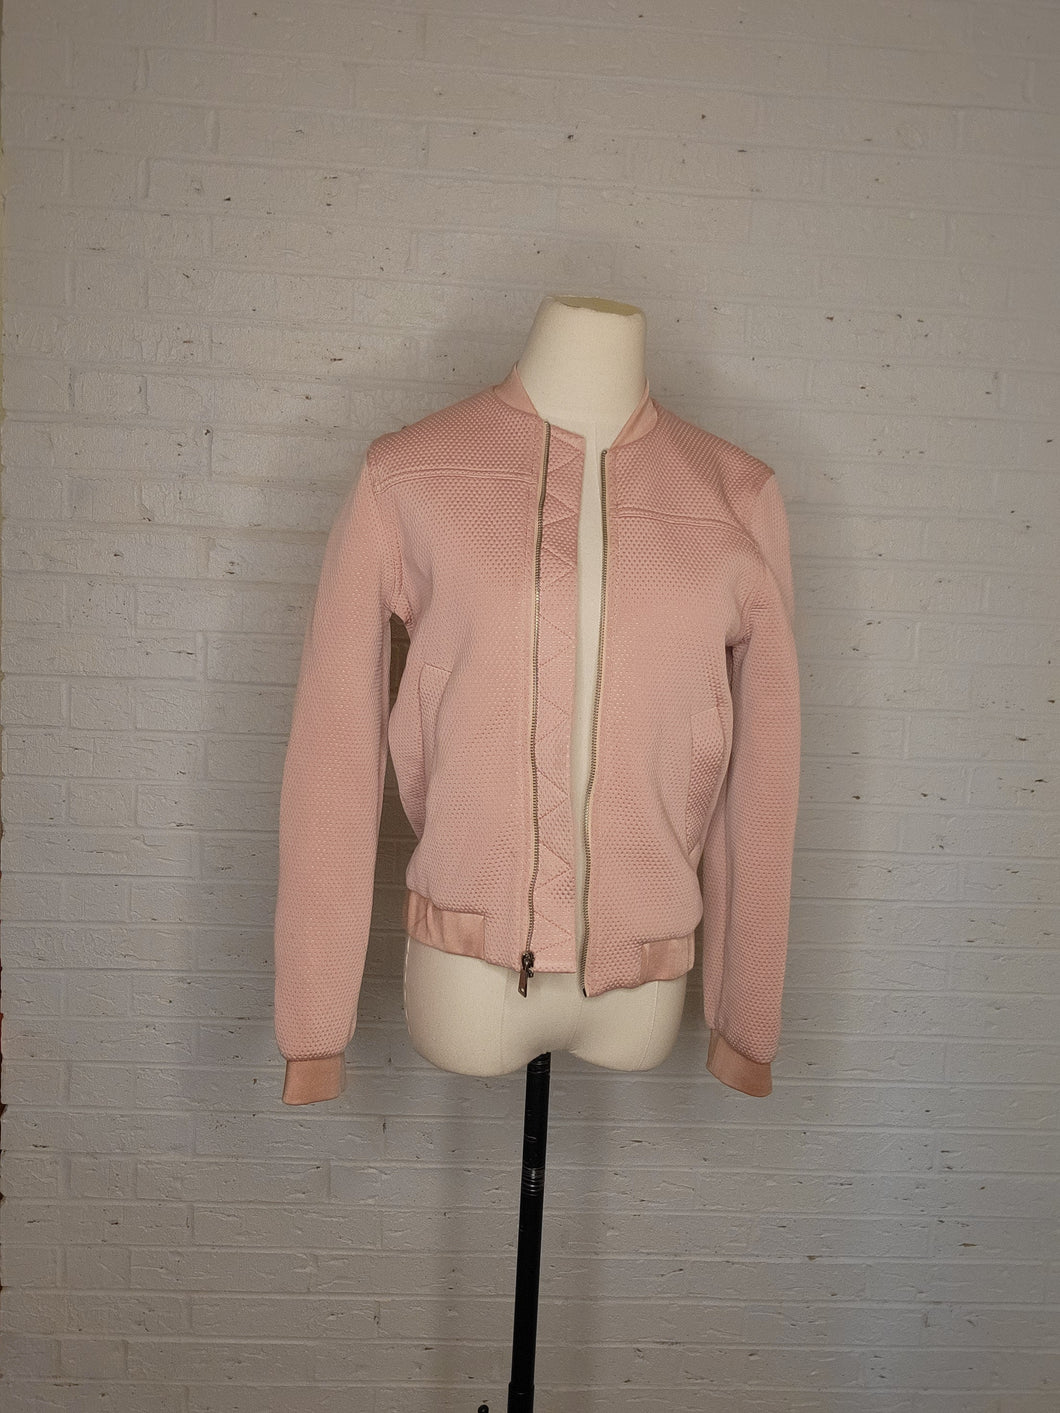 XS/S - Topshop Blush Pink Jacket